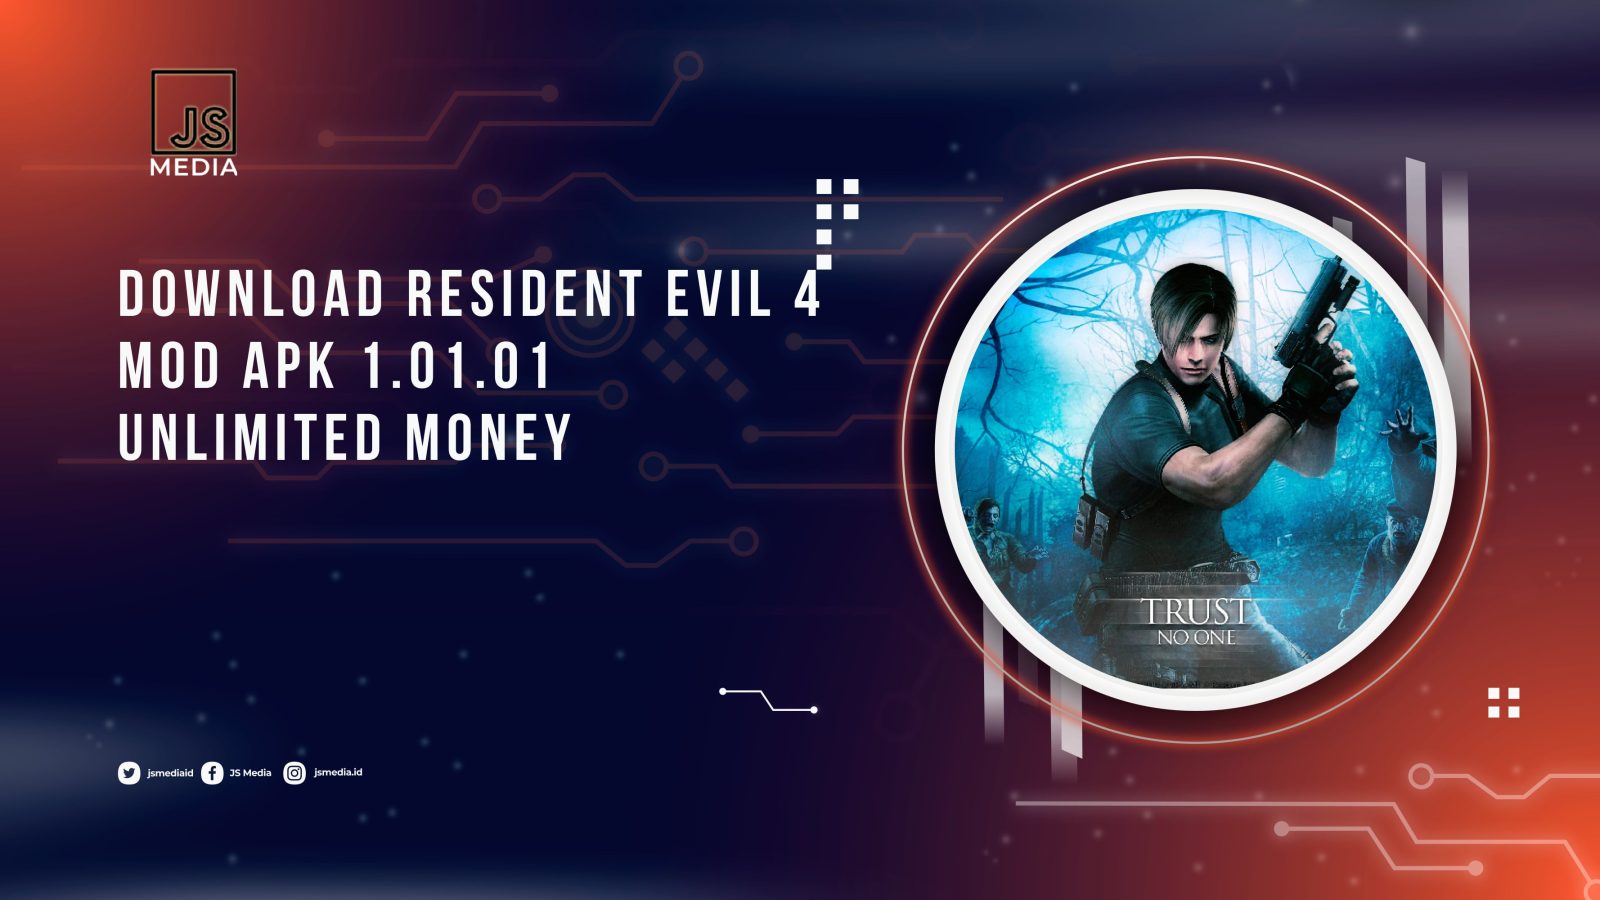 Download Resident Evil 4 MOD APK 1.01.01 Unlimited Money